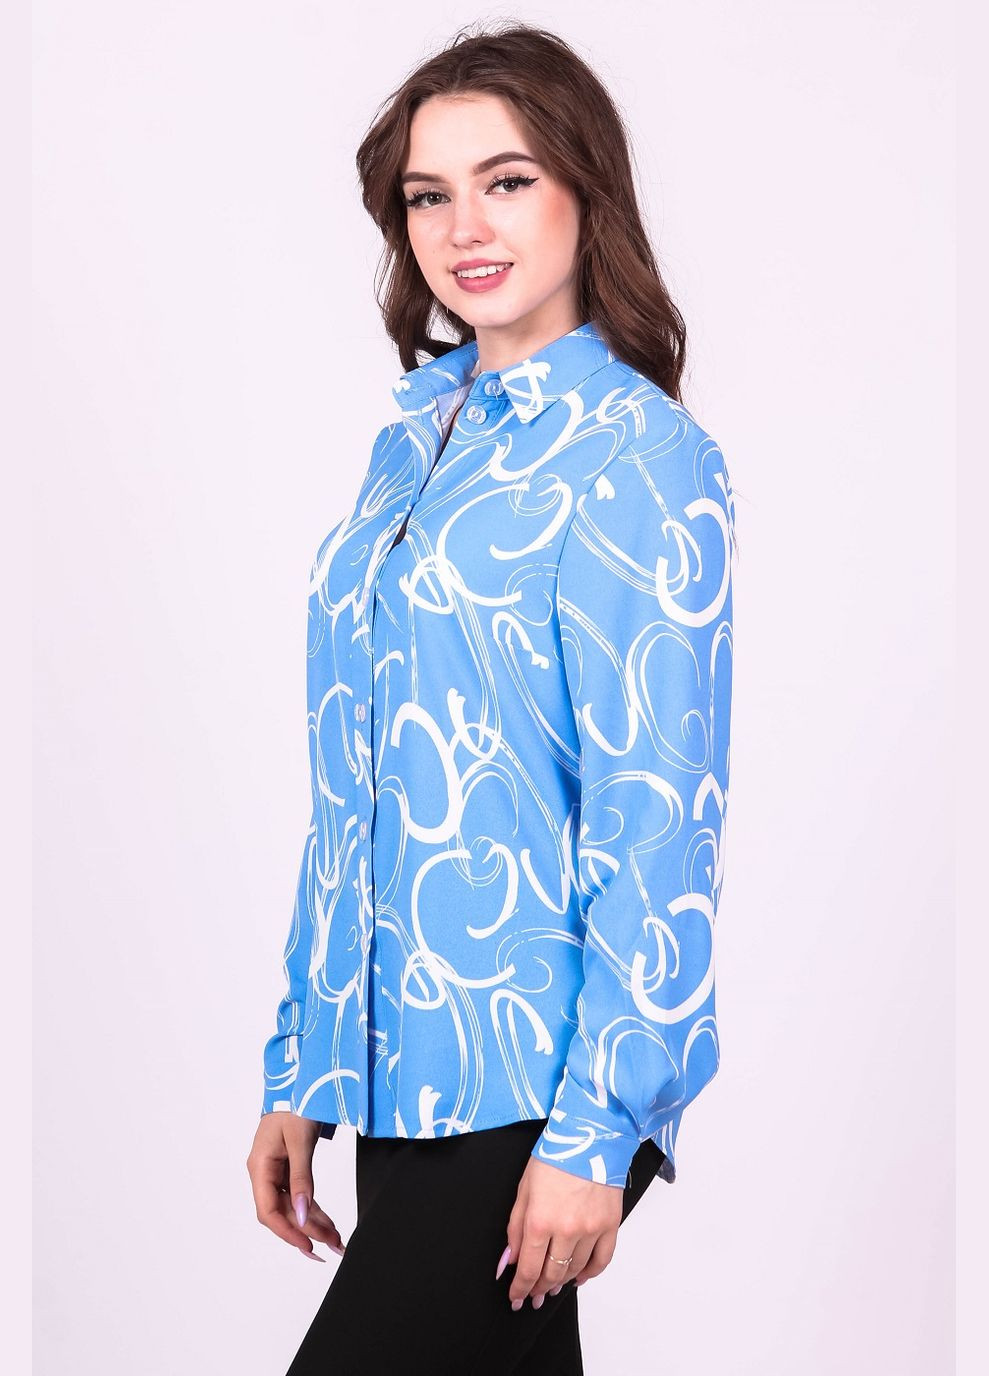 Голубая блузка - рубашка женская 051 рисунок белые креп голубая Актуаль